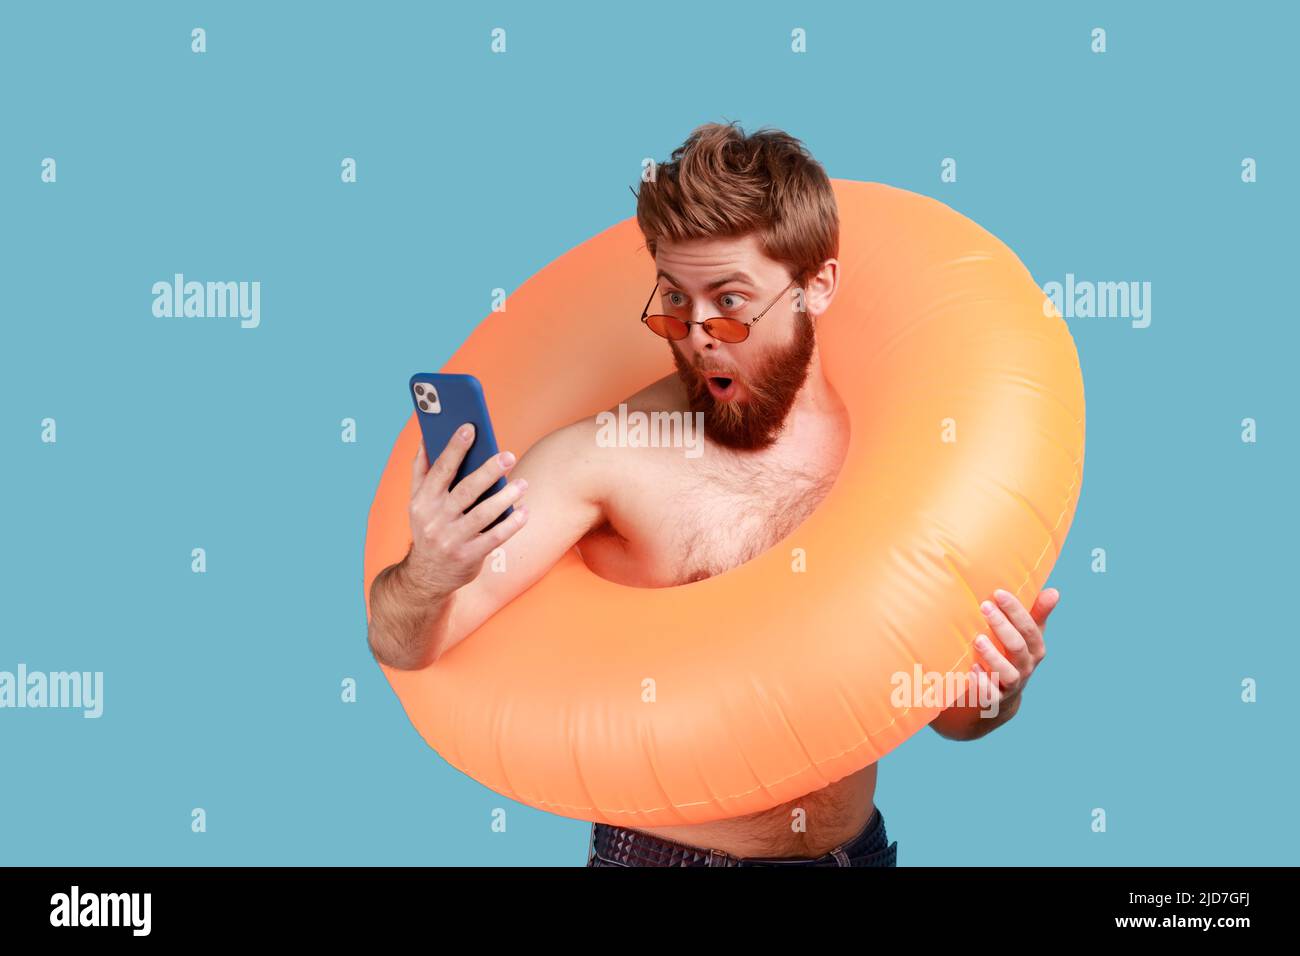 Porträt eines erstaunt überraschten bärtigen Mannes in Sonnenbrille, der mit orangefarbenem Gummiring steht und das Mobiltelefon hält und mit offenem Mund auf das Display blickt. Innenaufnahme des Studios isoliert auf blauem Hintergrund. Stockfoto